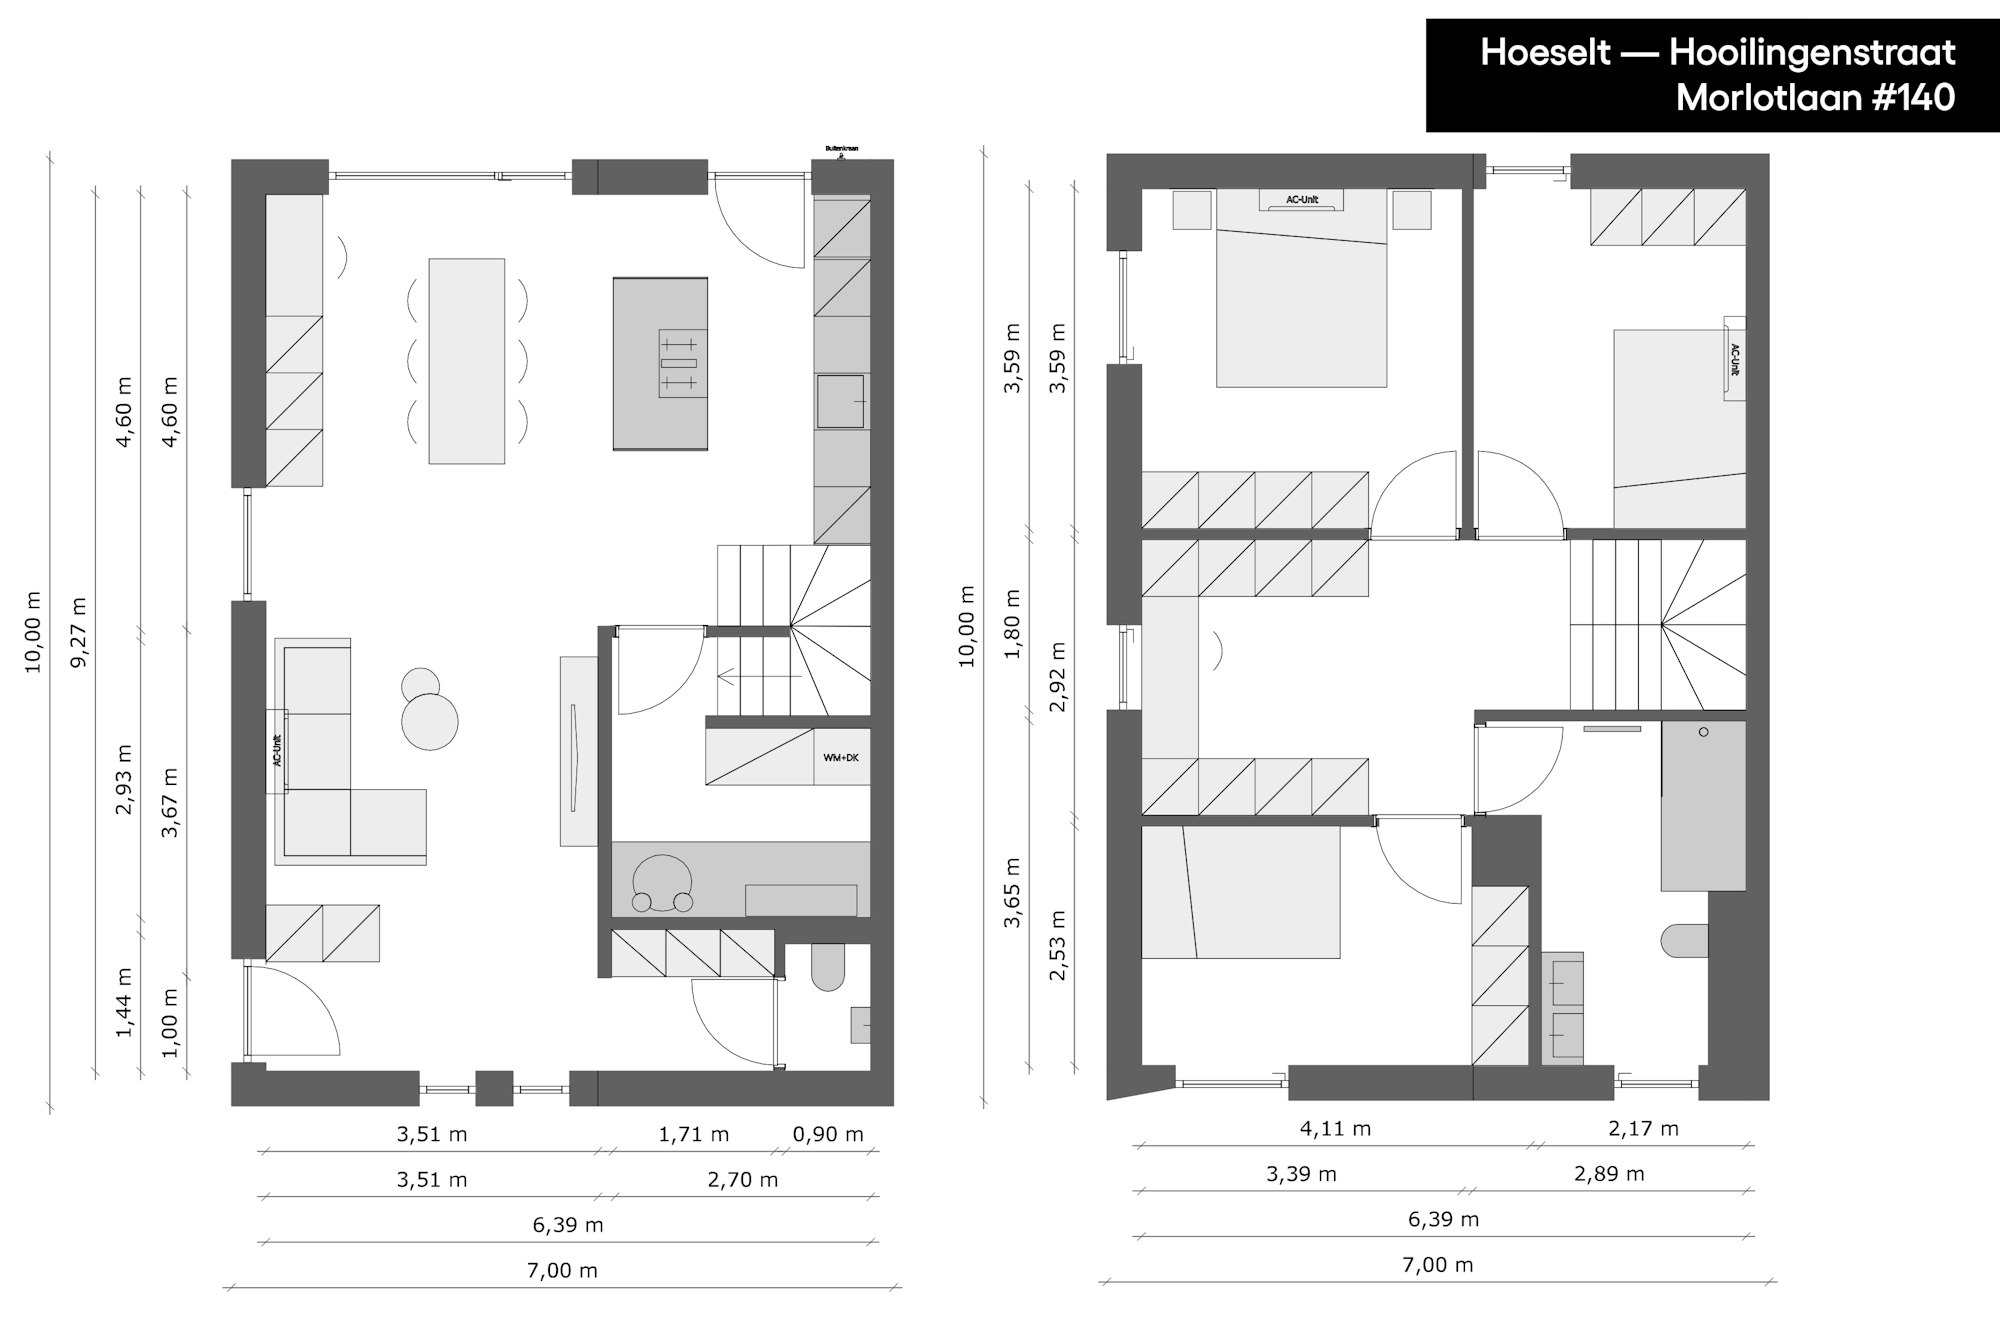 Skilpod nieuwbouwproject Hoeselt Hooilingenstraat plan